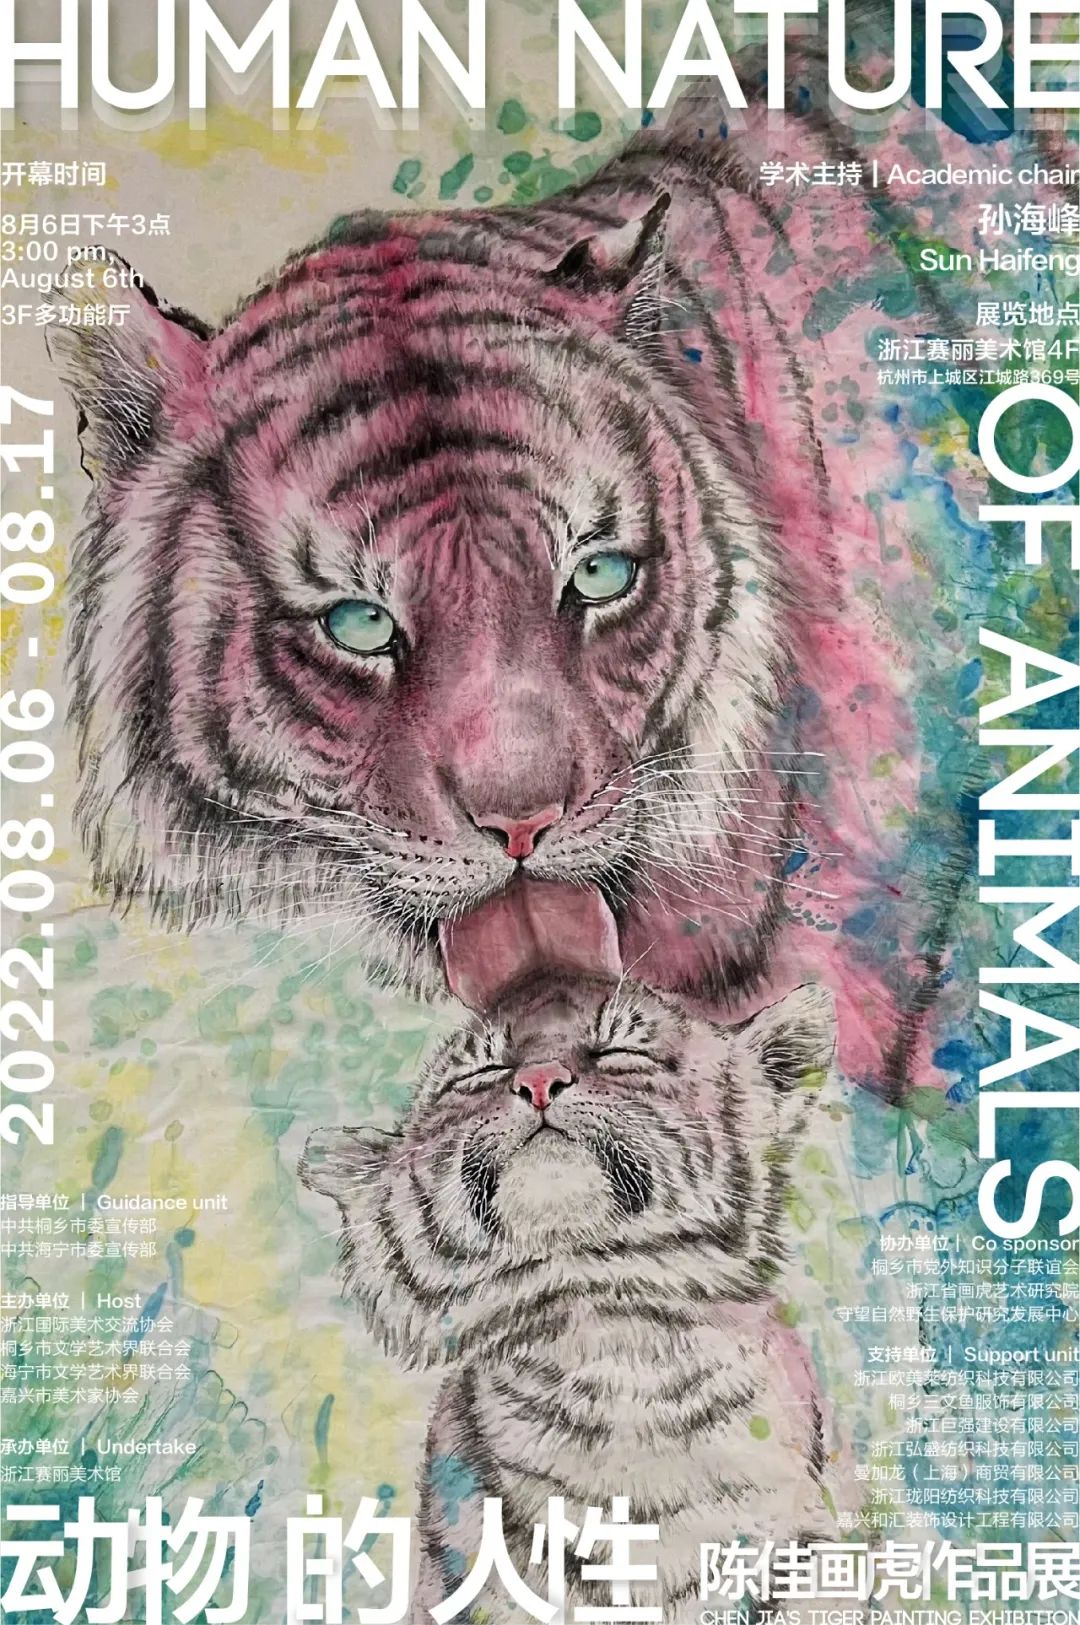 动物的人性——陈佳画虎作品展